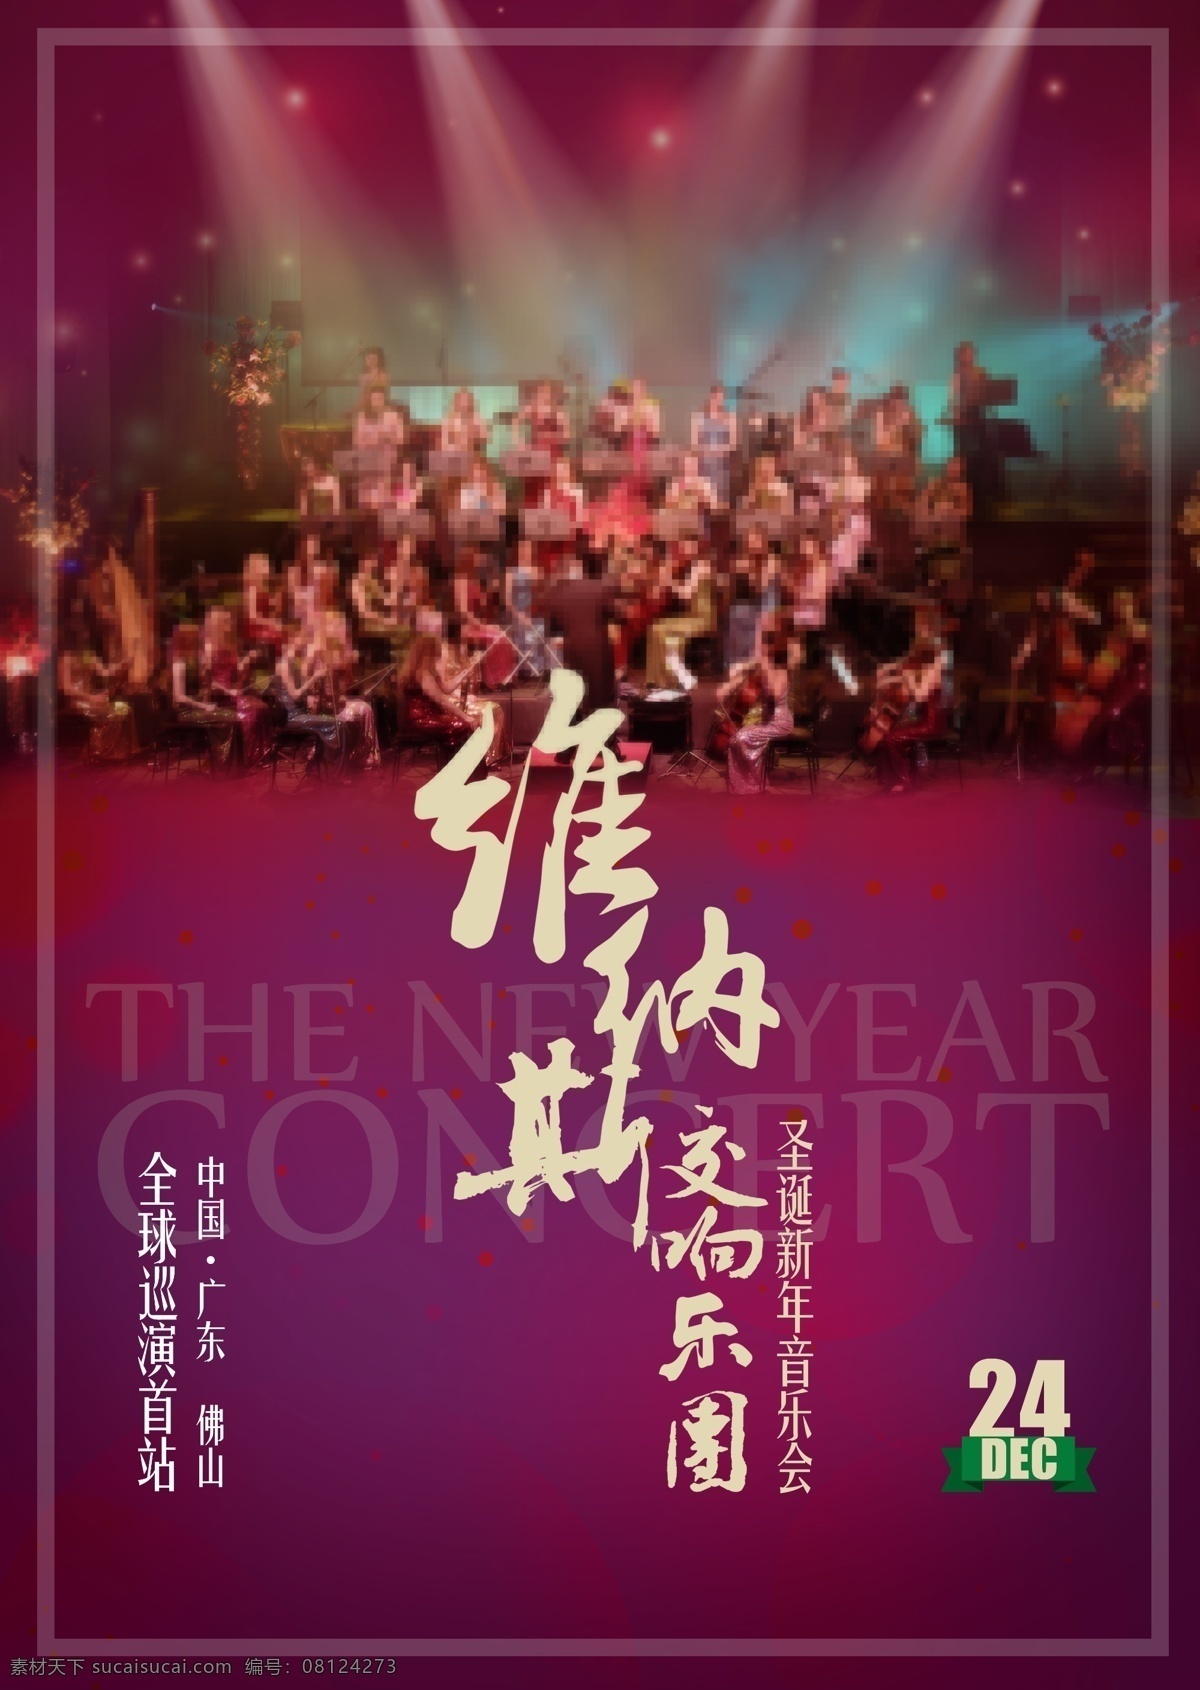 交响乐团 圣诞 新年 音乐会 海报 展板 灯光 光线 点光 紫色背景 维纳斯交响乐